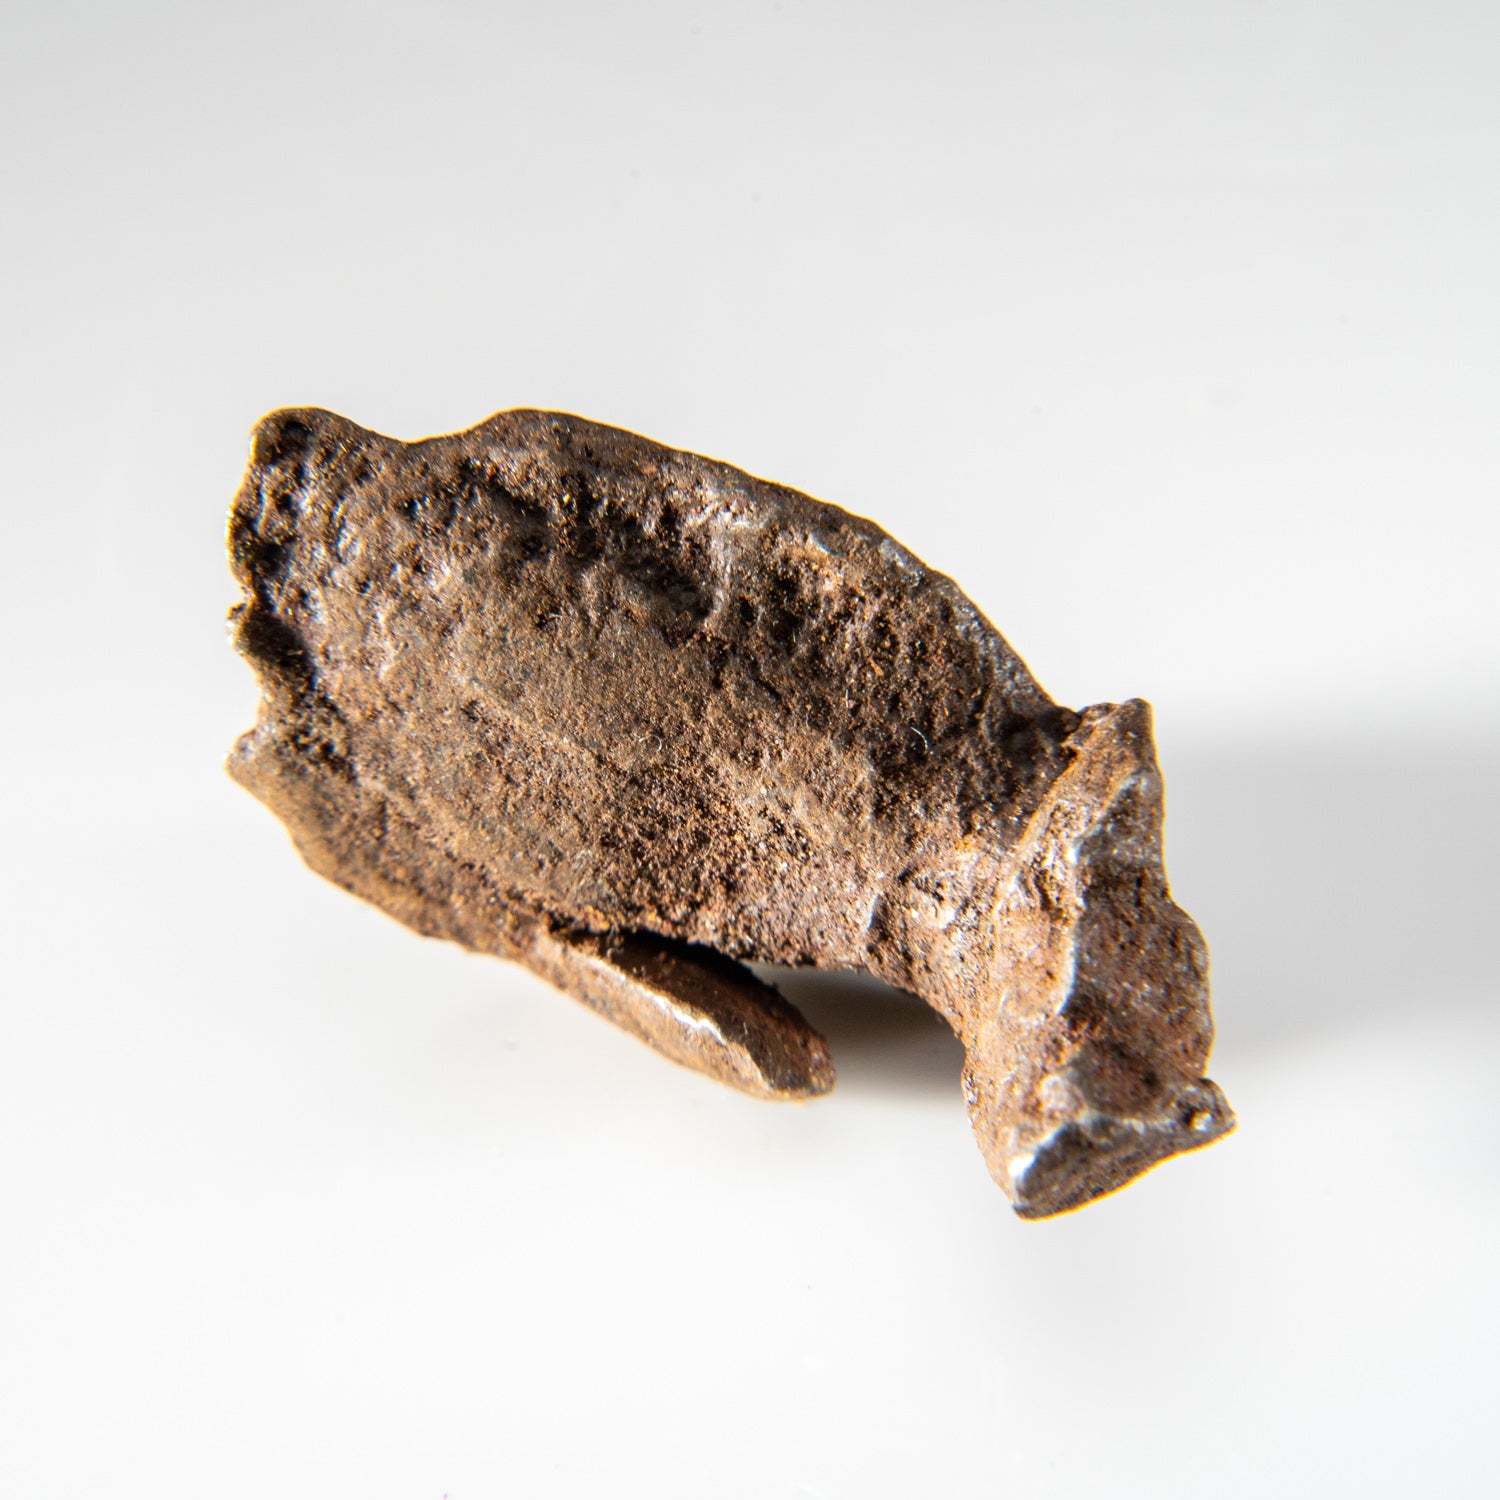 Genuine Gebel Kamil Meteorite from Egypt (23 grams)